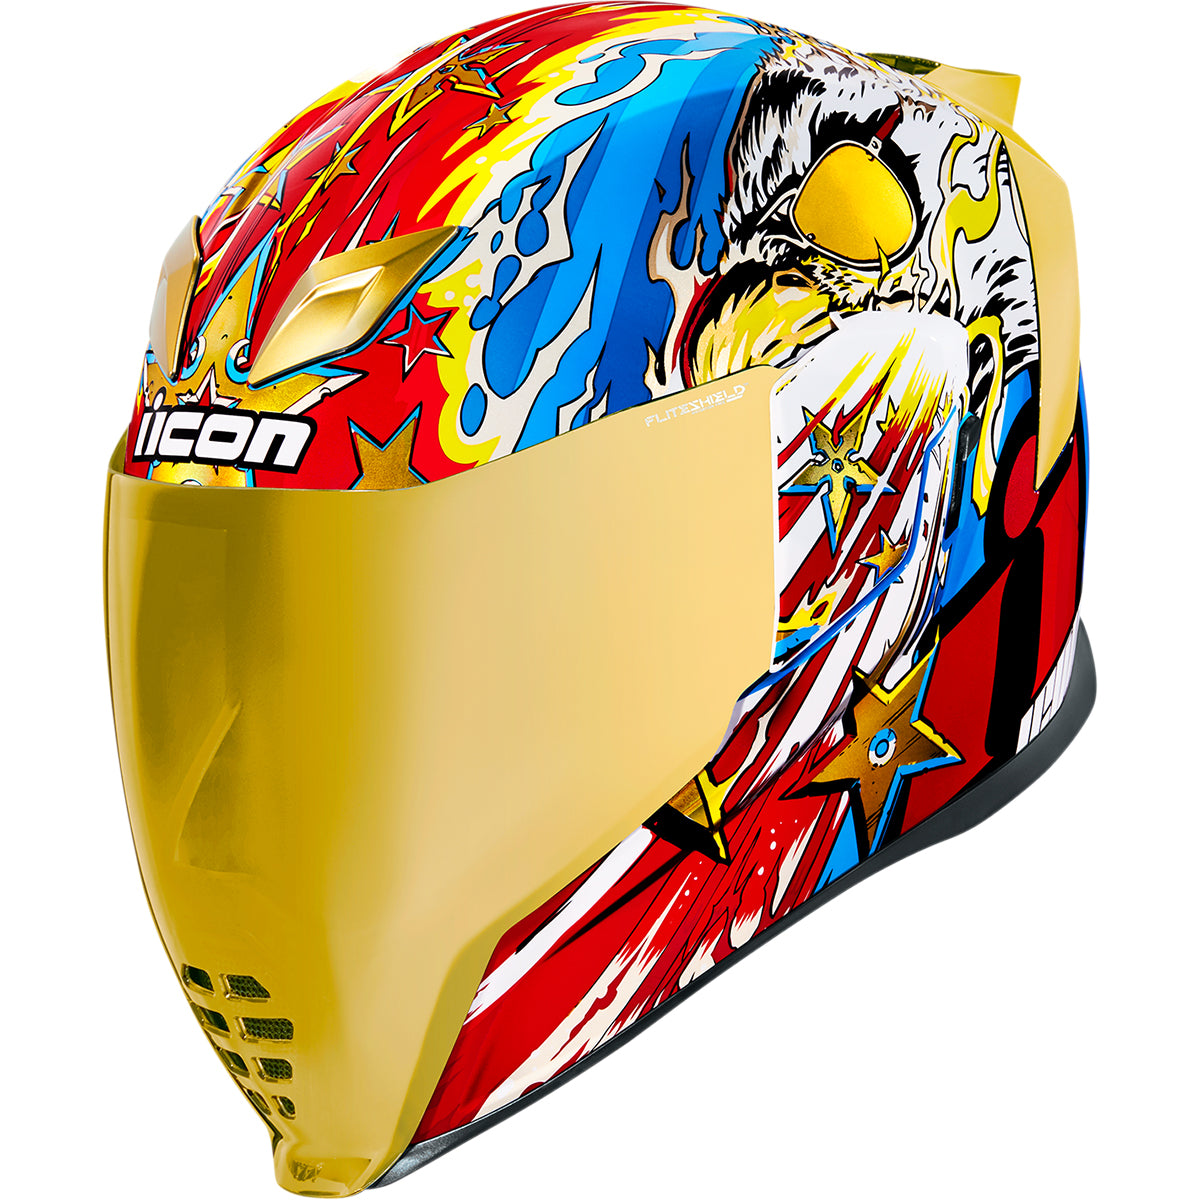 ICON Airflite™ Freedom Spitter Helmet